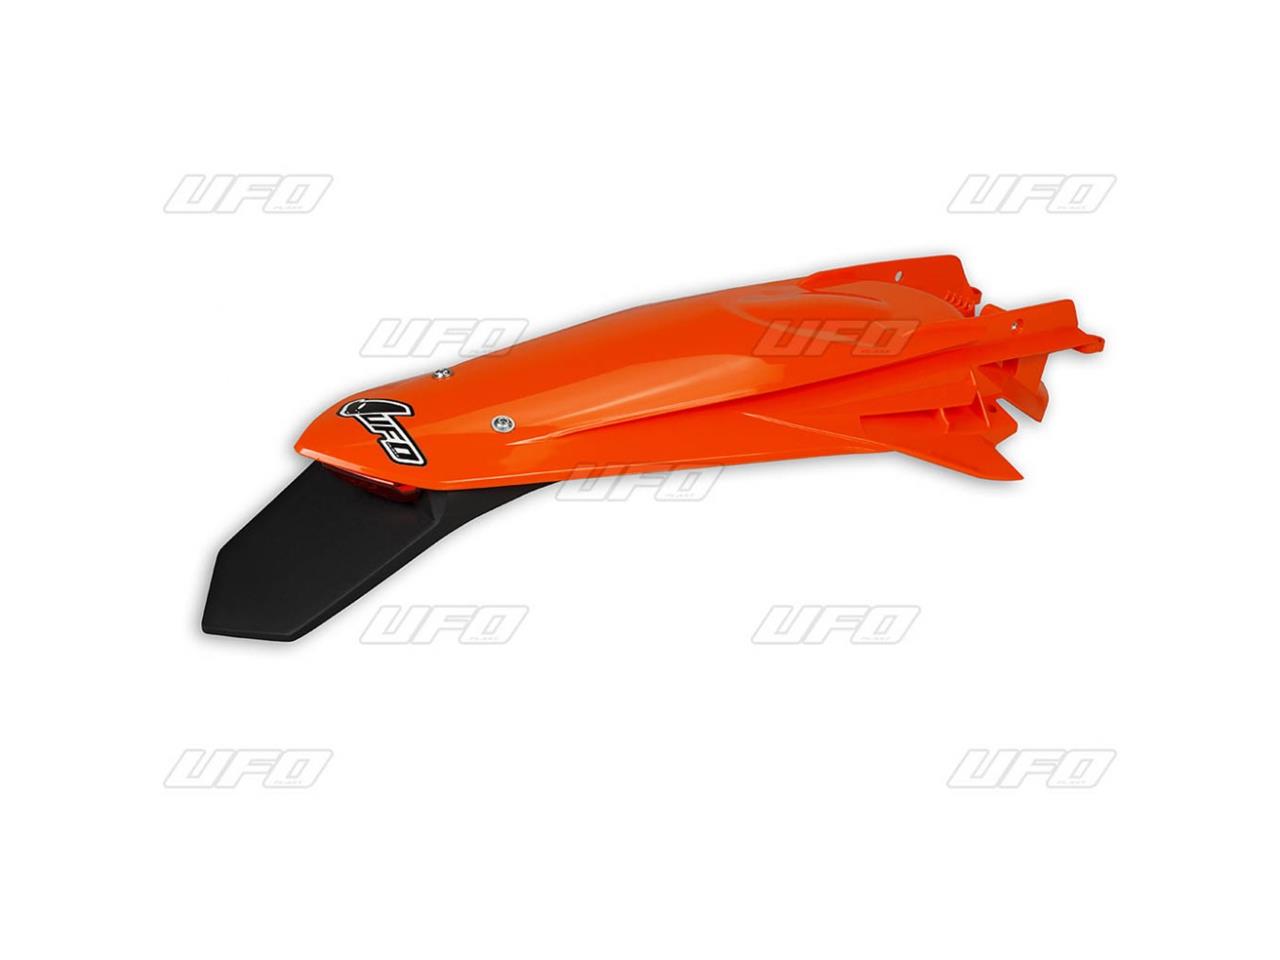 Garde-boue arrière + support de plaque avec feu marque UFO couleur orange fluo